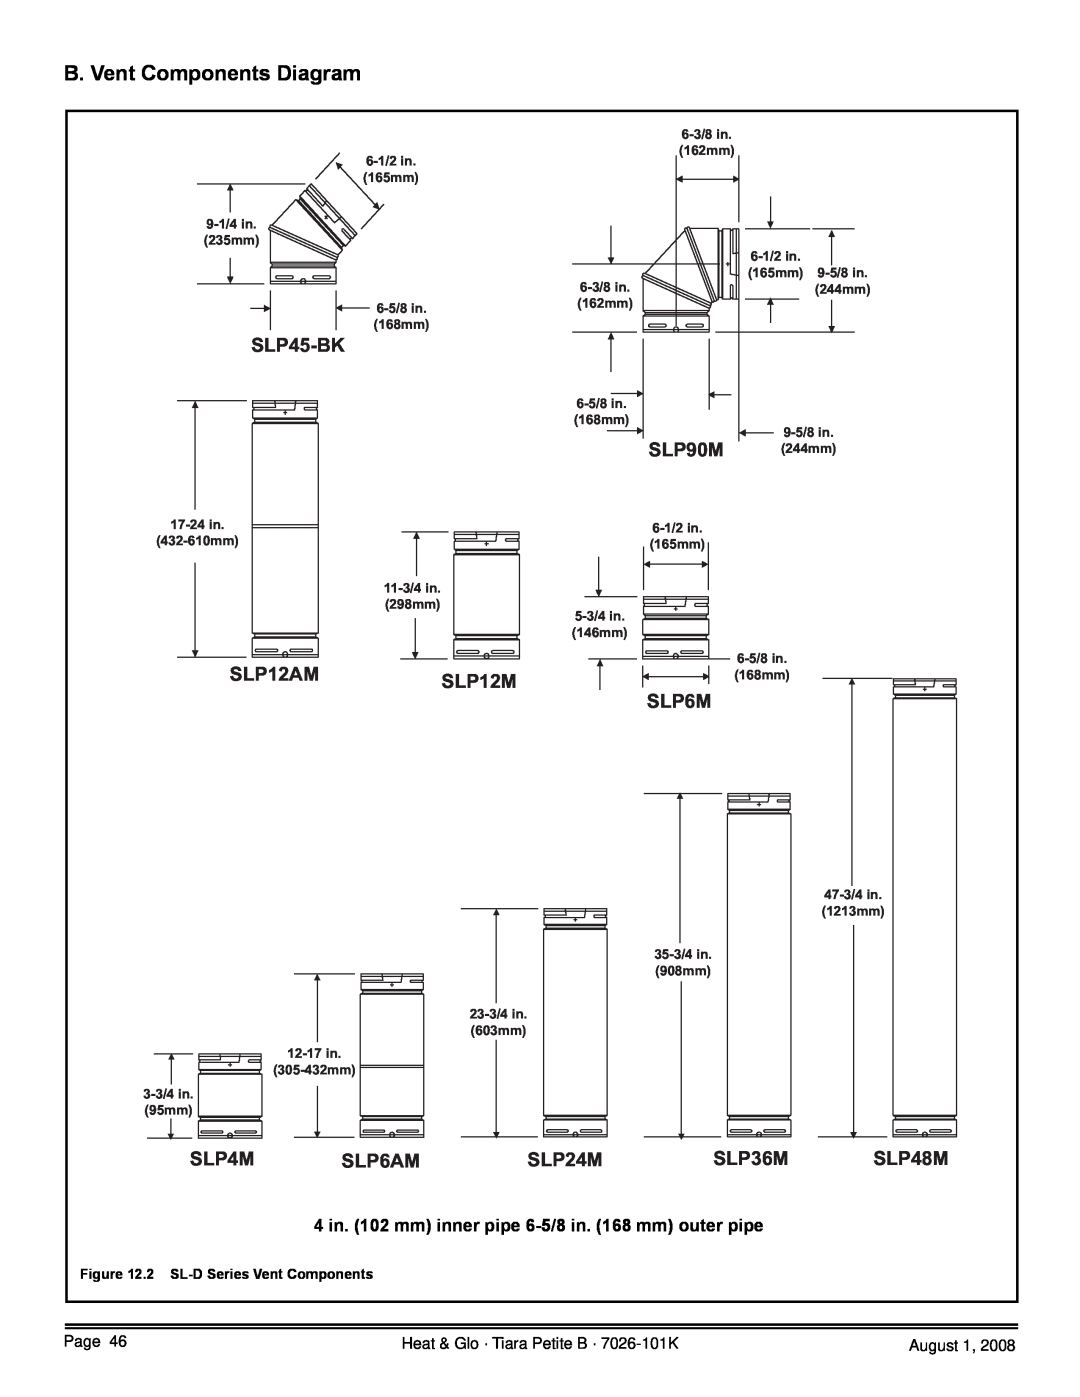 Heat & Glo LifeStyle TIARAP-BK B. Vent Components Diagram, SLP45-BK, SLP90M, SLP12AM, SLP12M, SLP4M, SLP6AM, SLP24M, SLP6M 